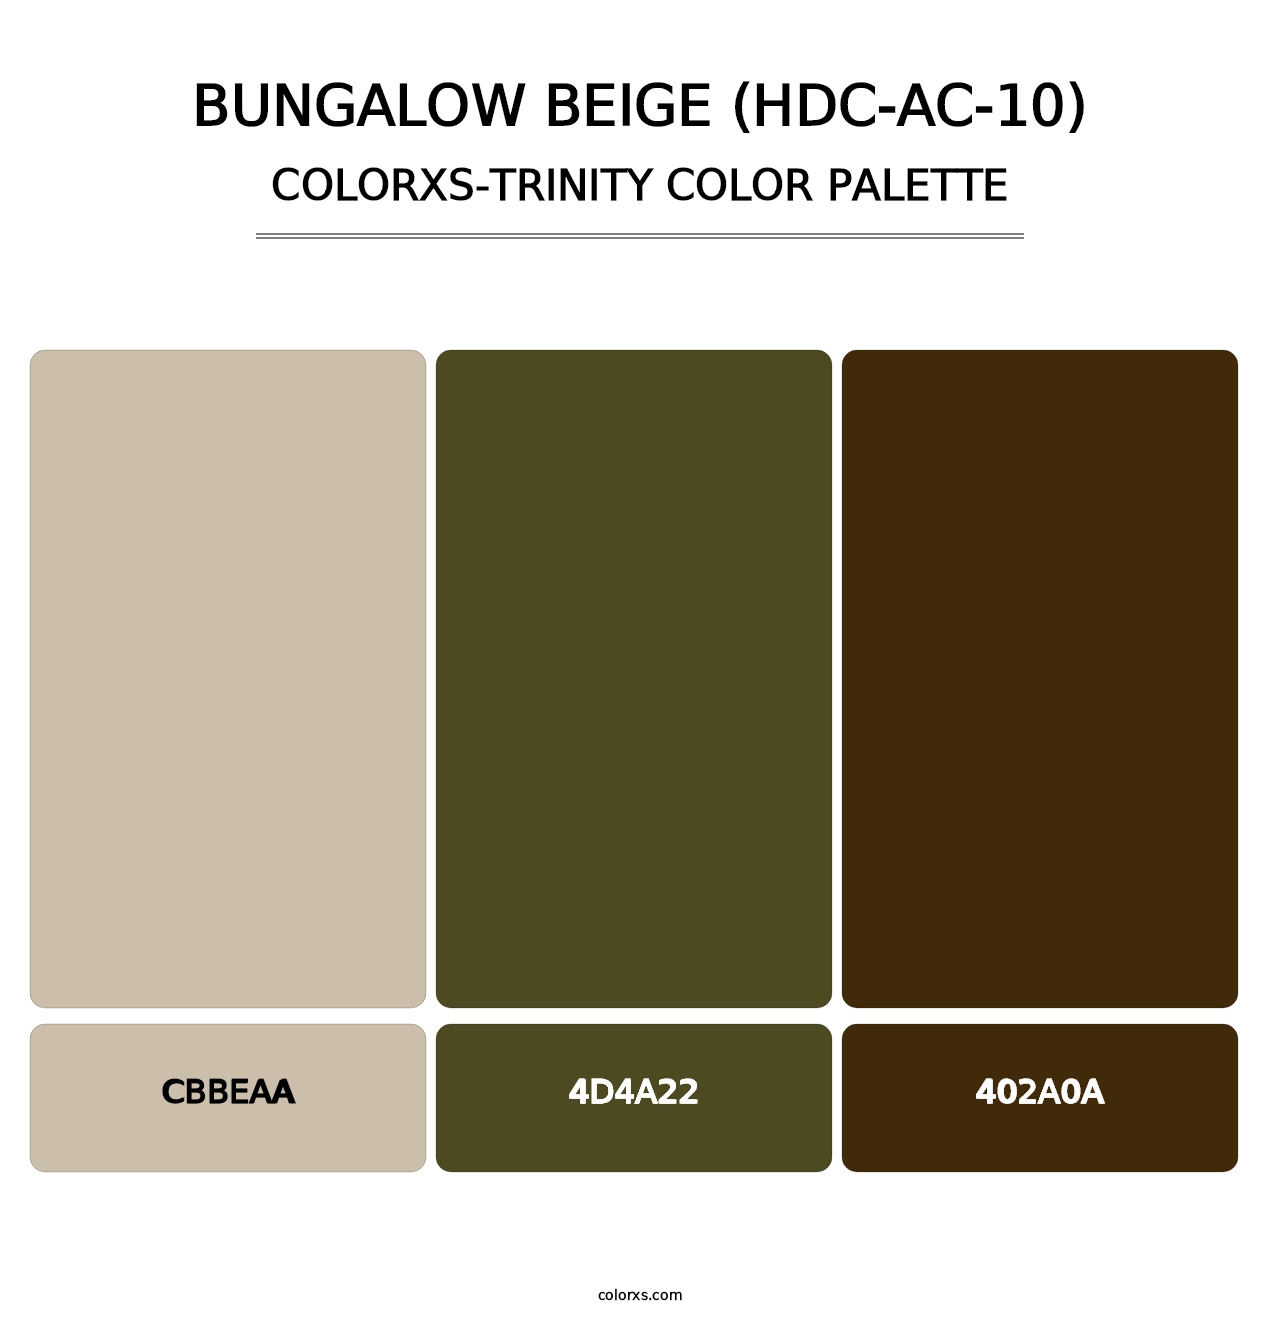 Bungalow Beige (HDC-AC-10) - Colorxs Trinity Palette